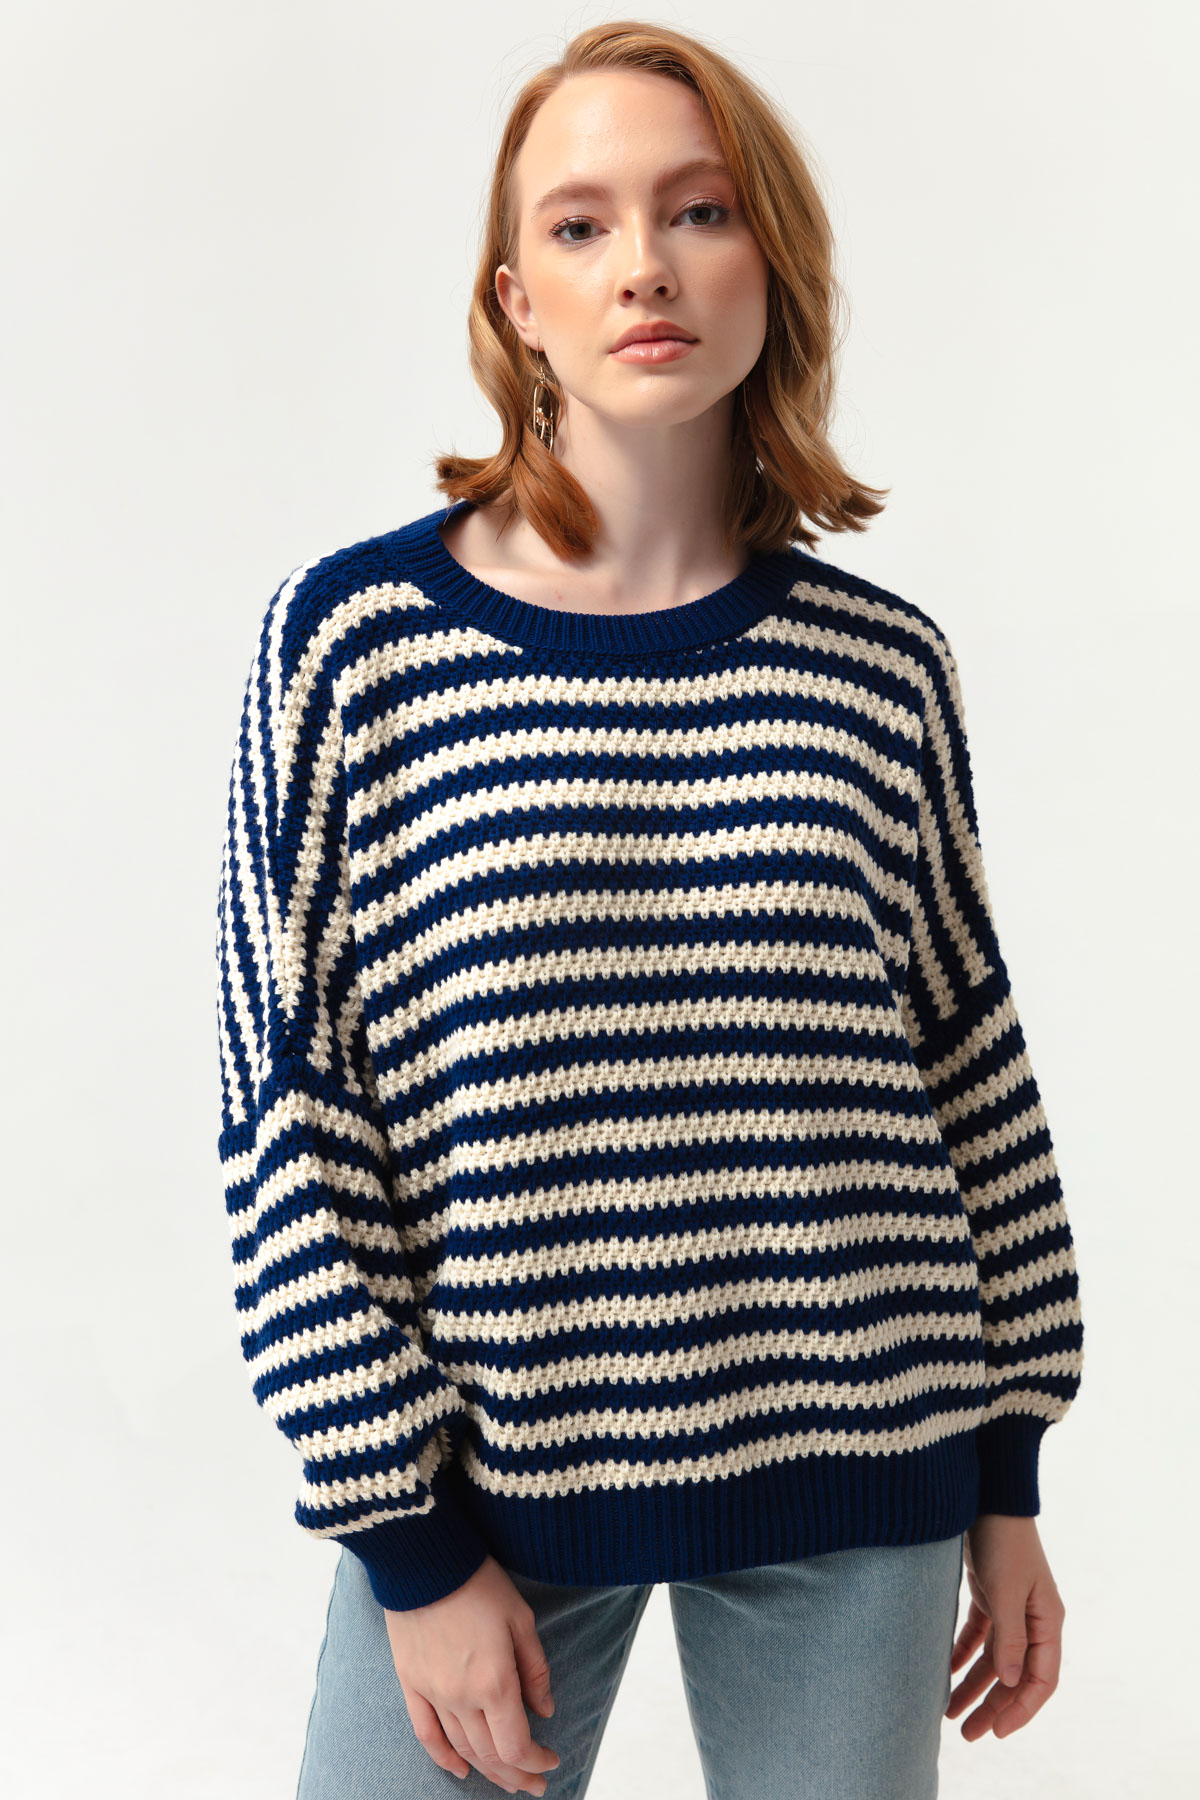 Women's Navy Blue Striped Knitwear Sweater